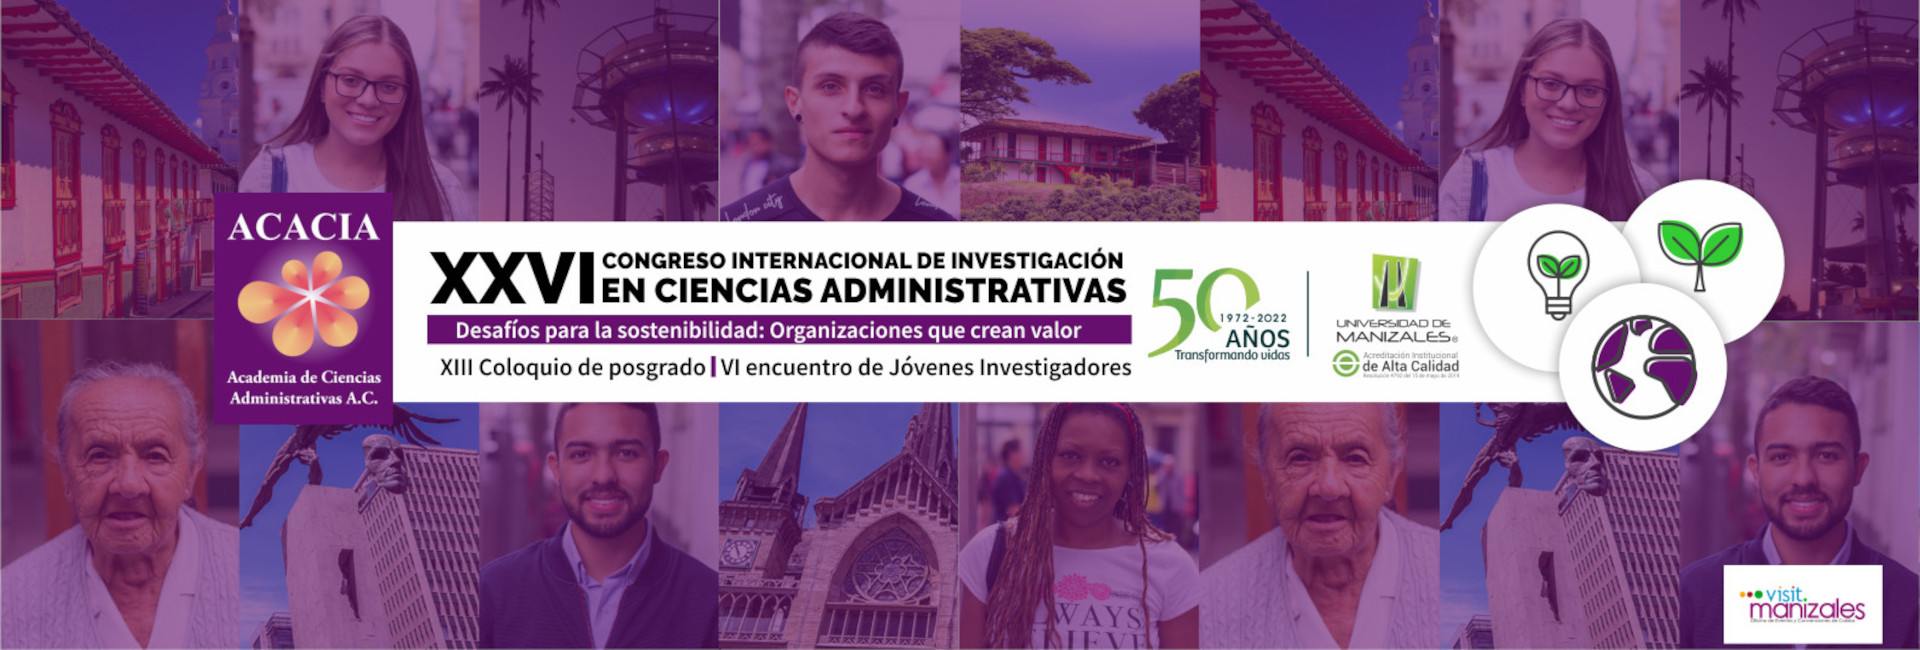 XXVI Congreso internacional de investigación en ciencias administrativas